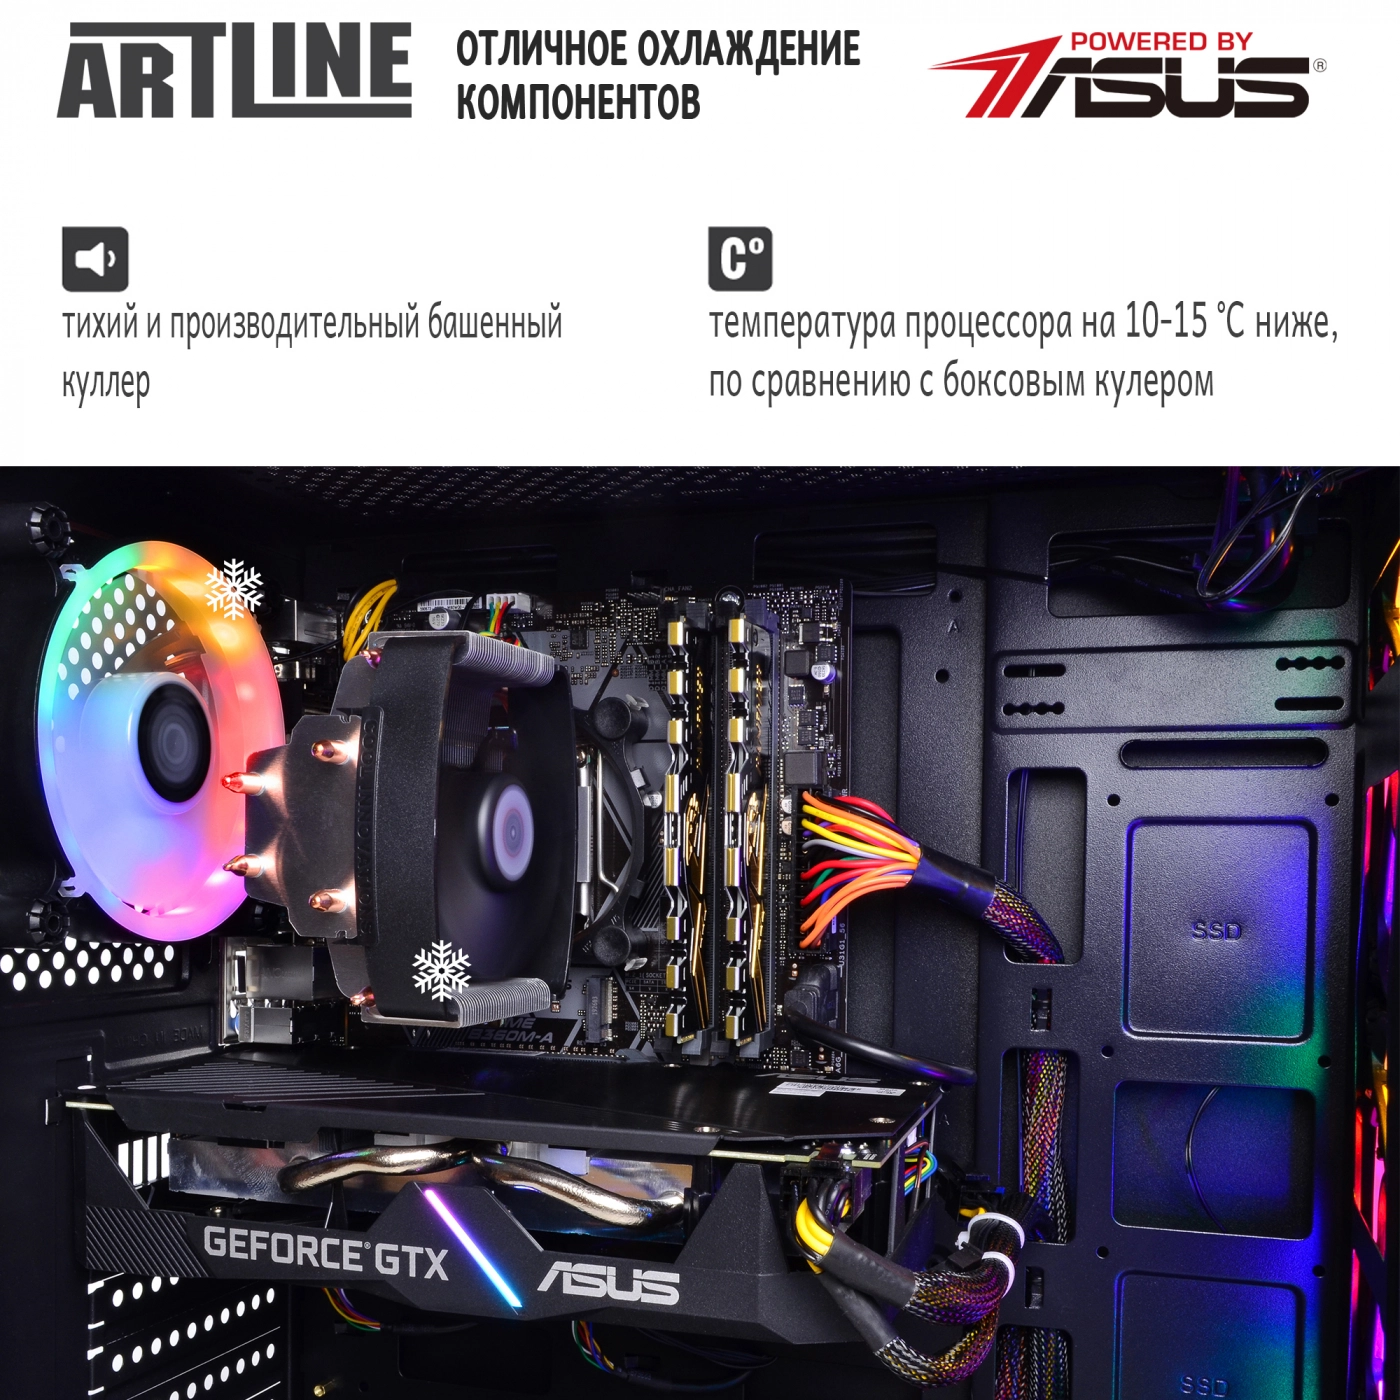 Купить Компьютер ARTLINE Gaming X68v05 - фото 7